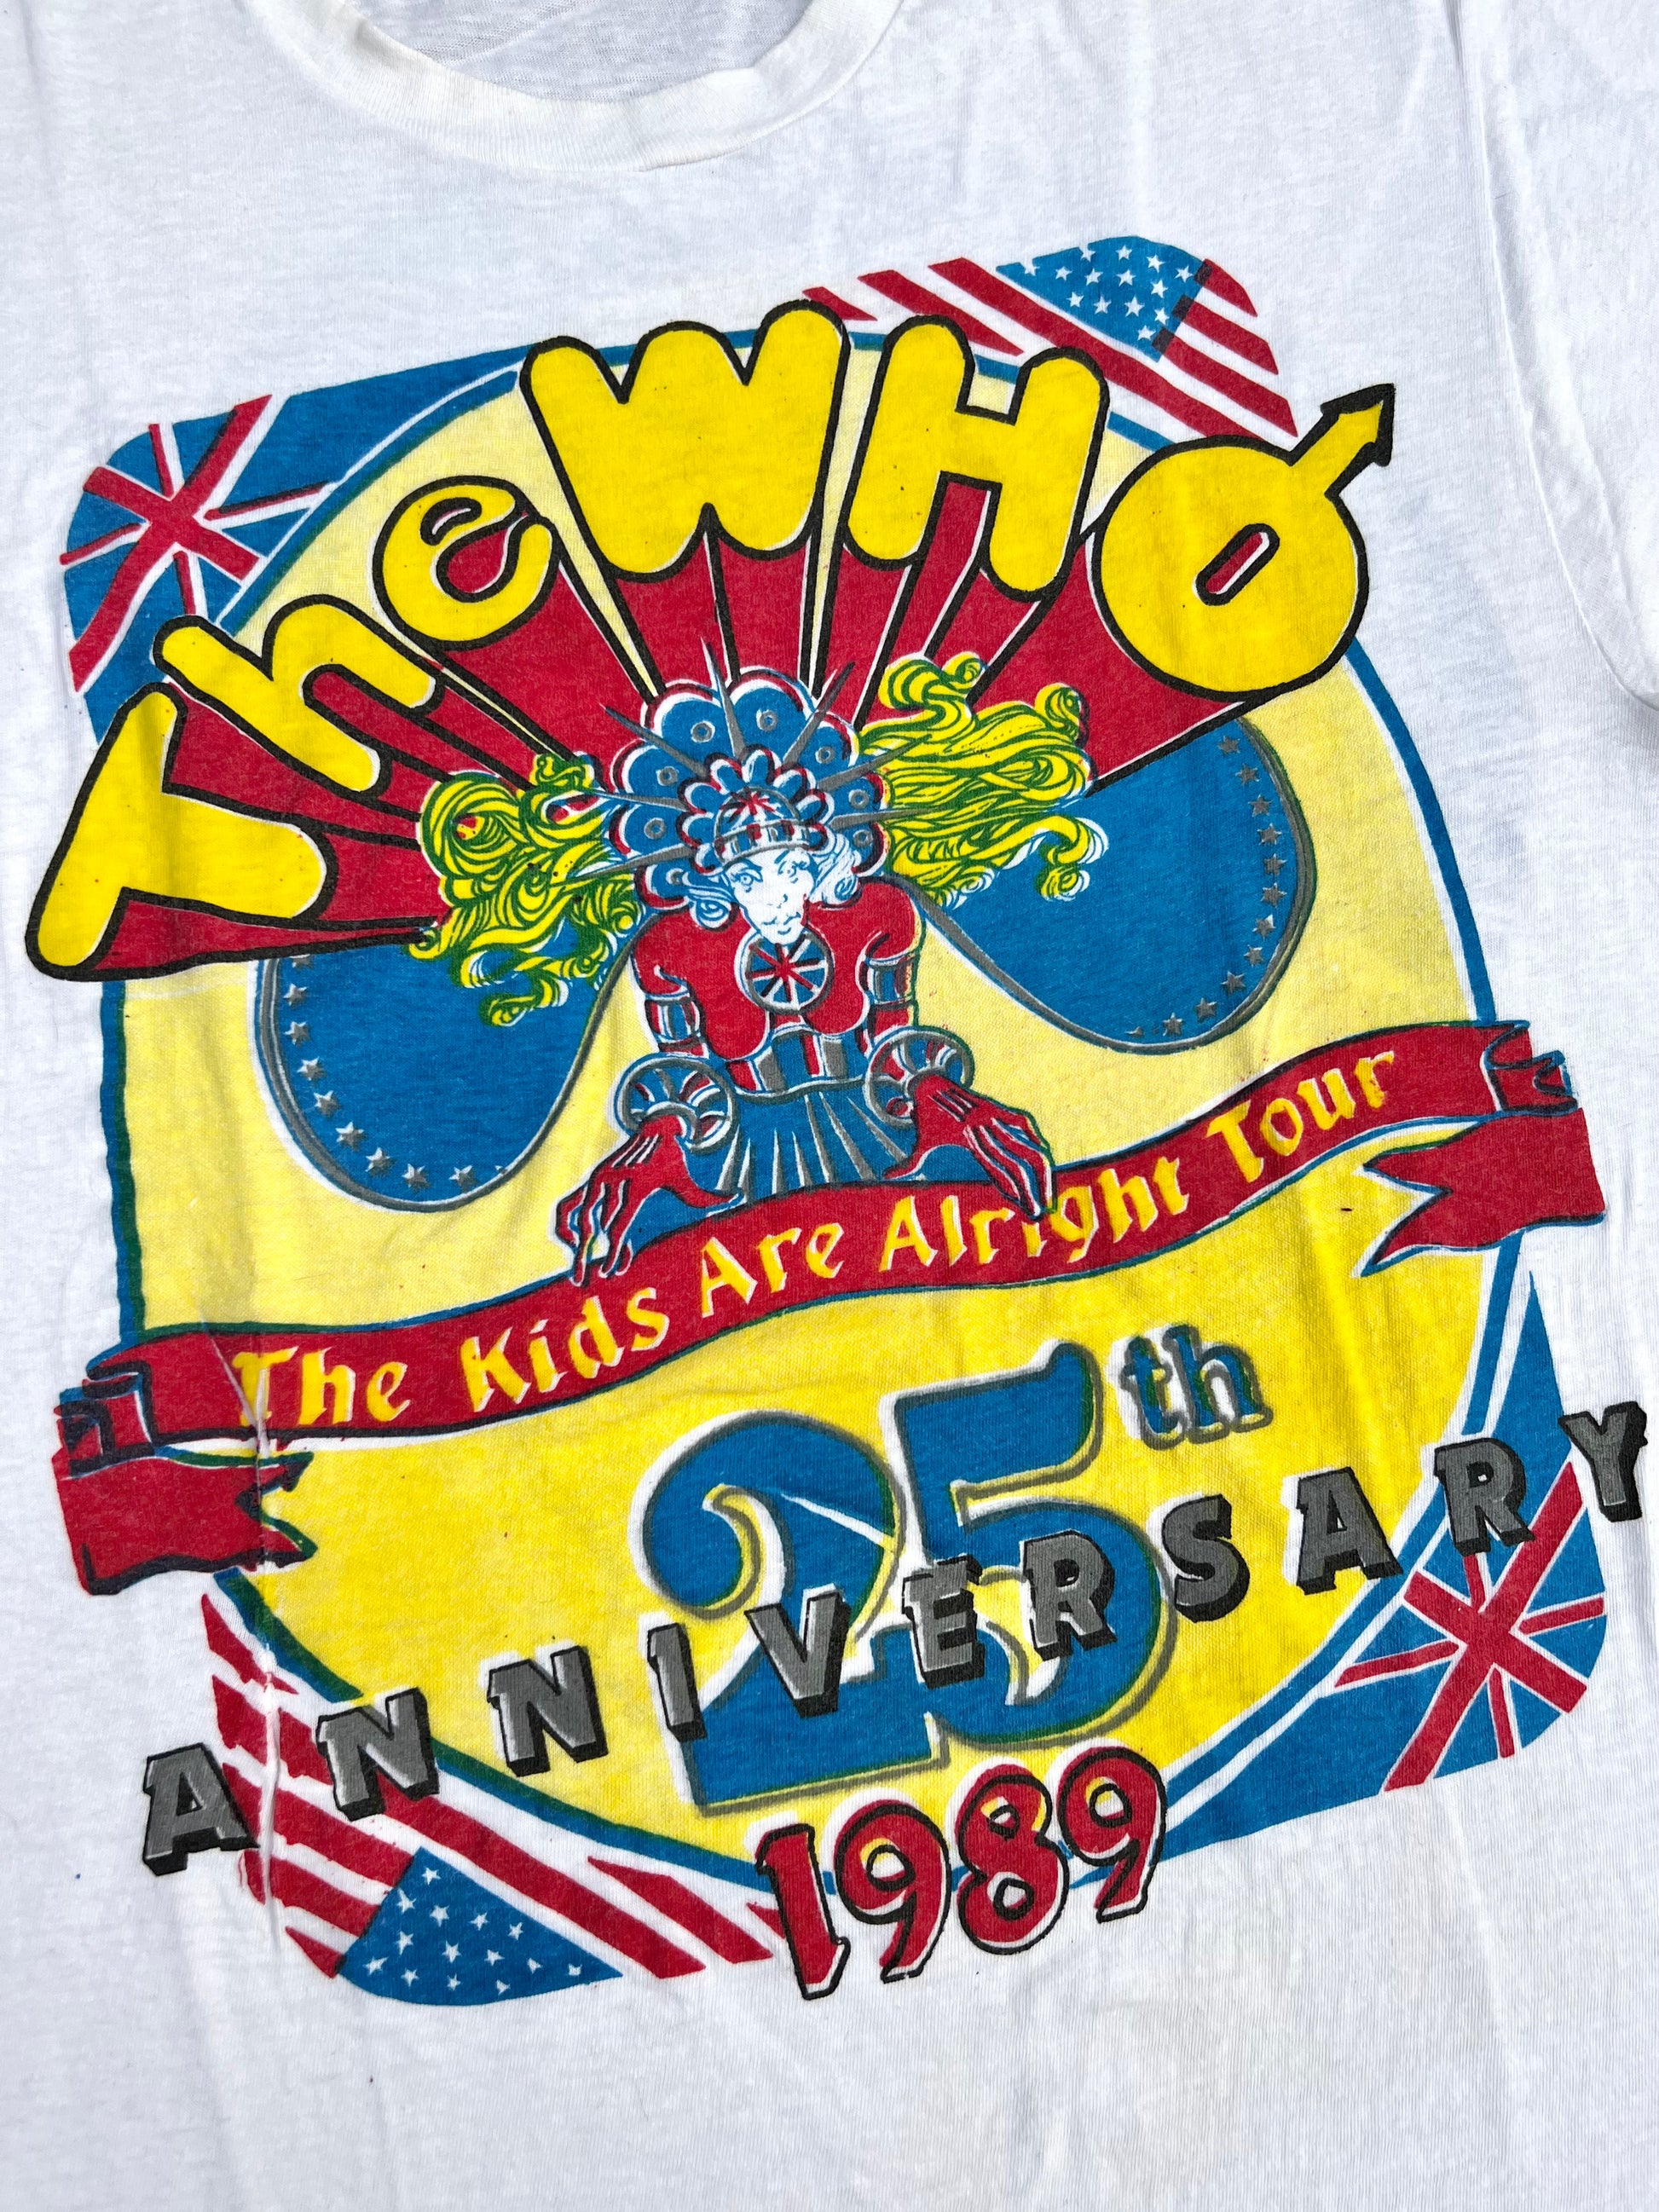 ビンテージTシャツ THE WHO 1989ツアーTシャツ - Tシャツ/カットソー ...